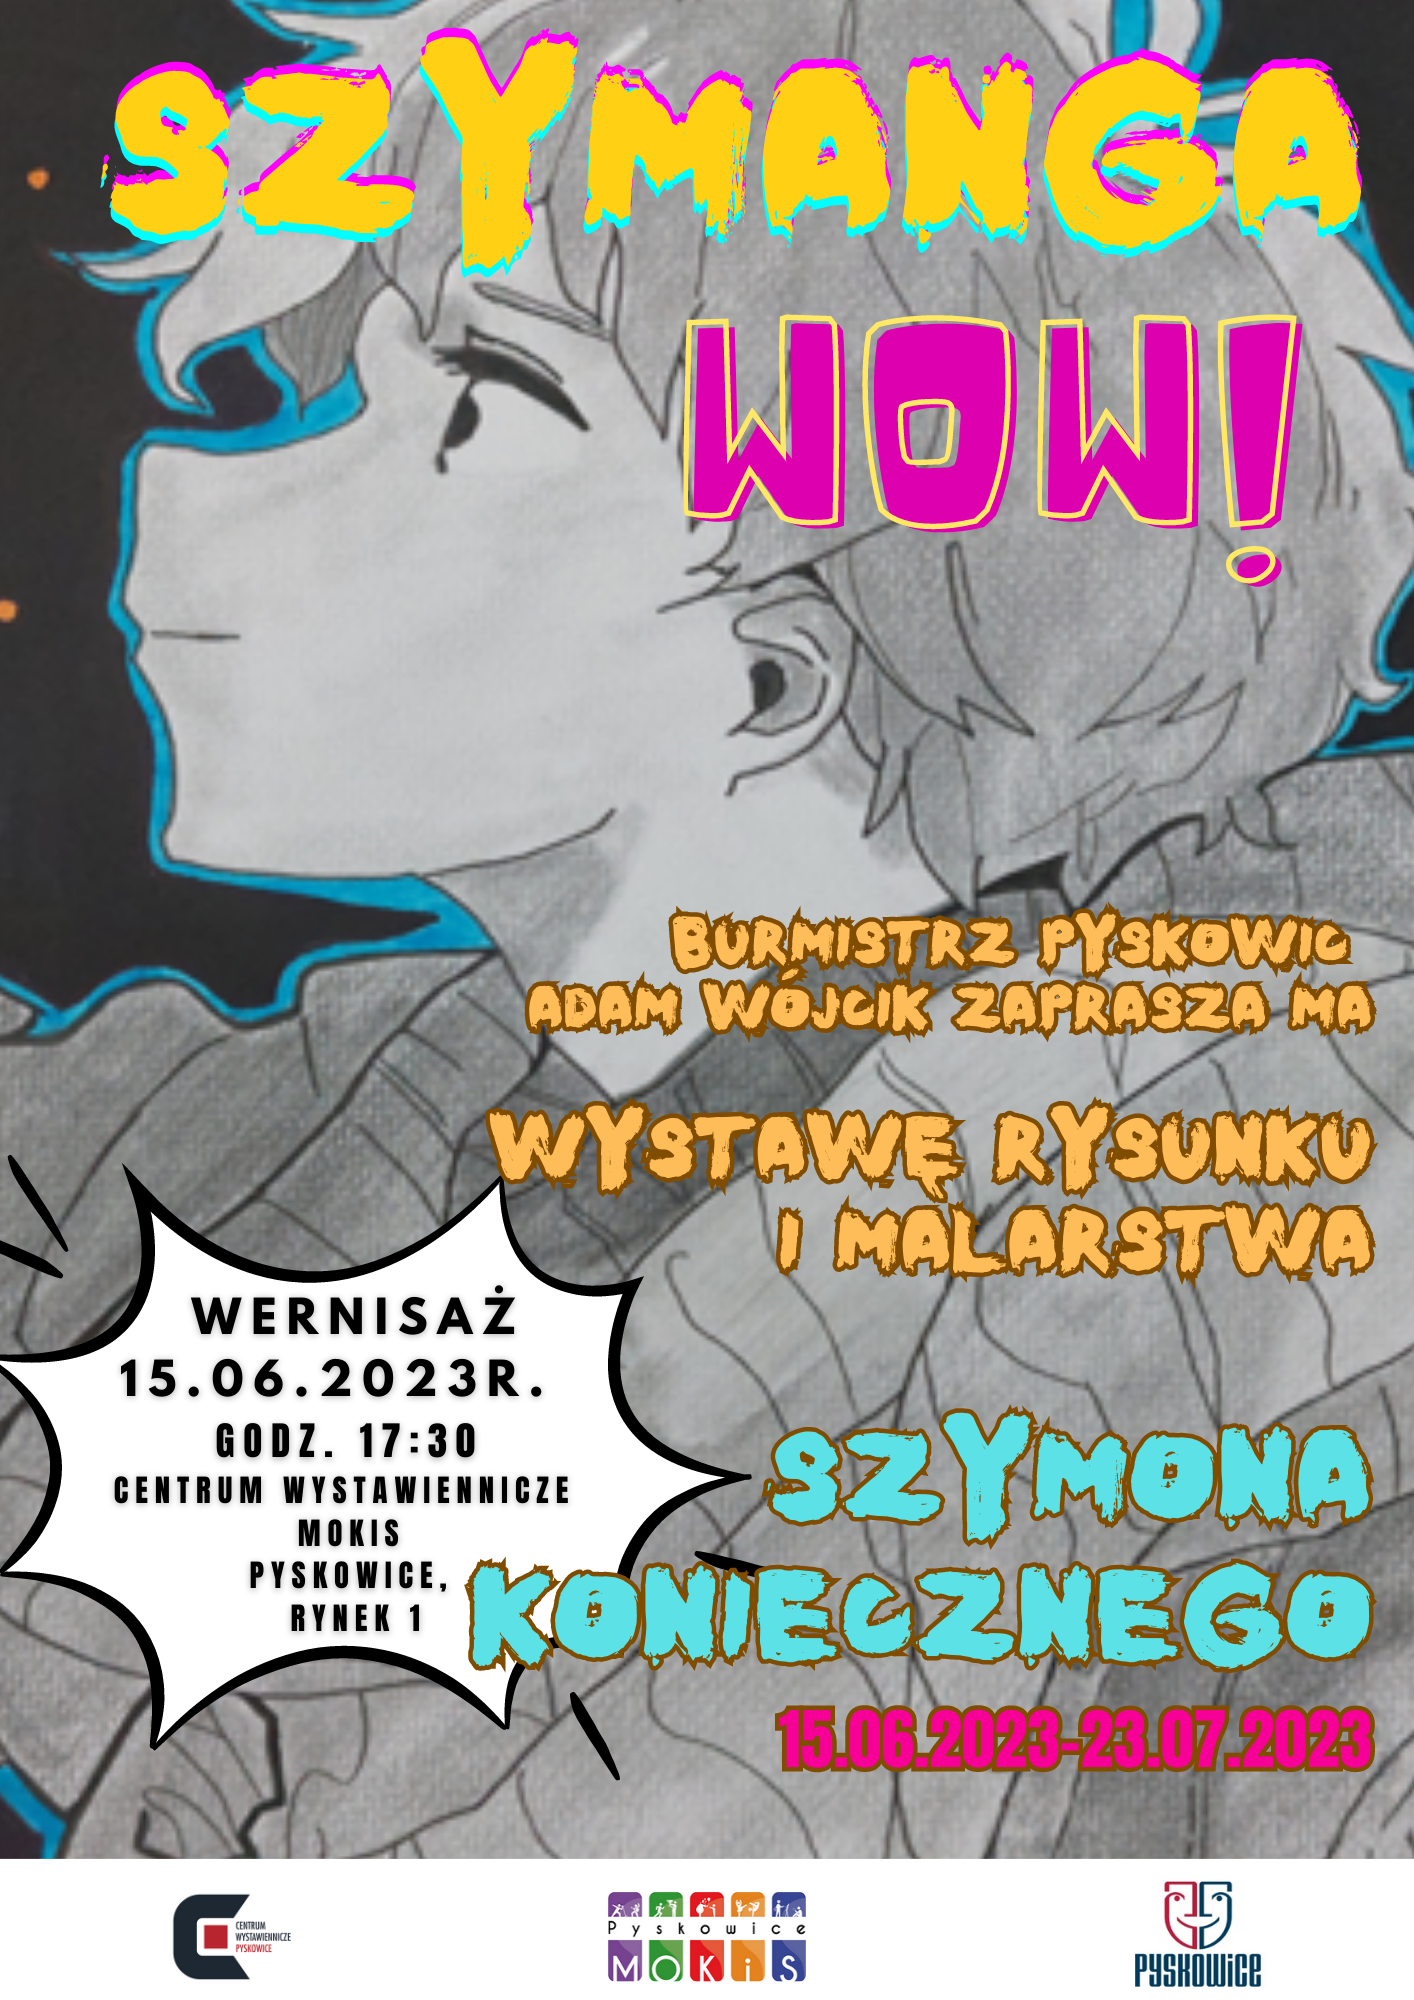 Plakat promujący wystawę rysunku i malarstwa w Centrum Wystawienniczym w Pyskowicach